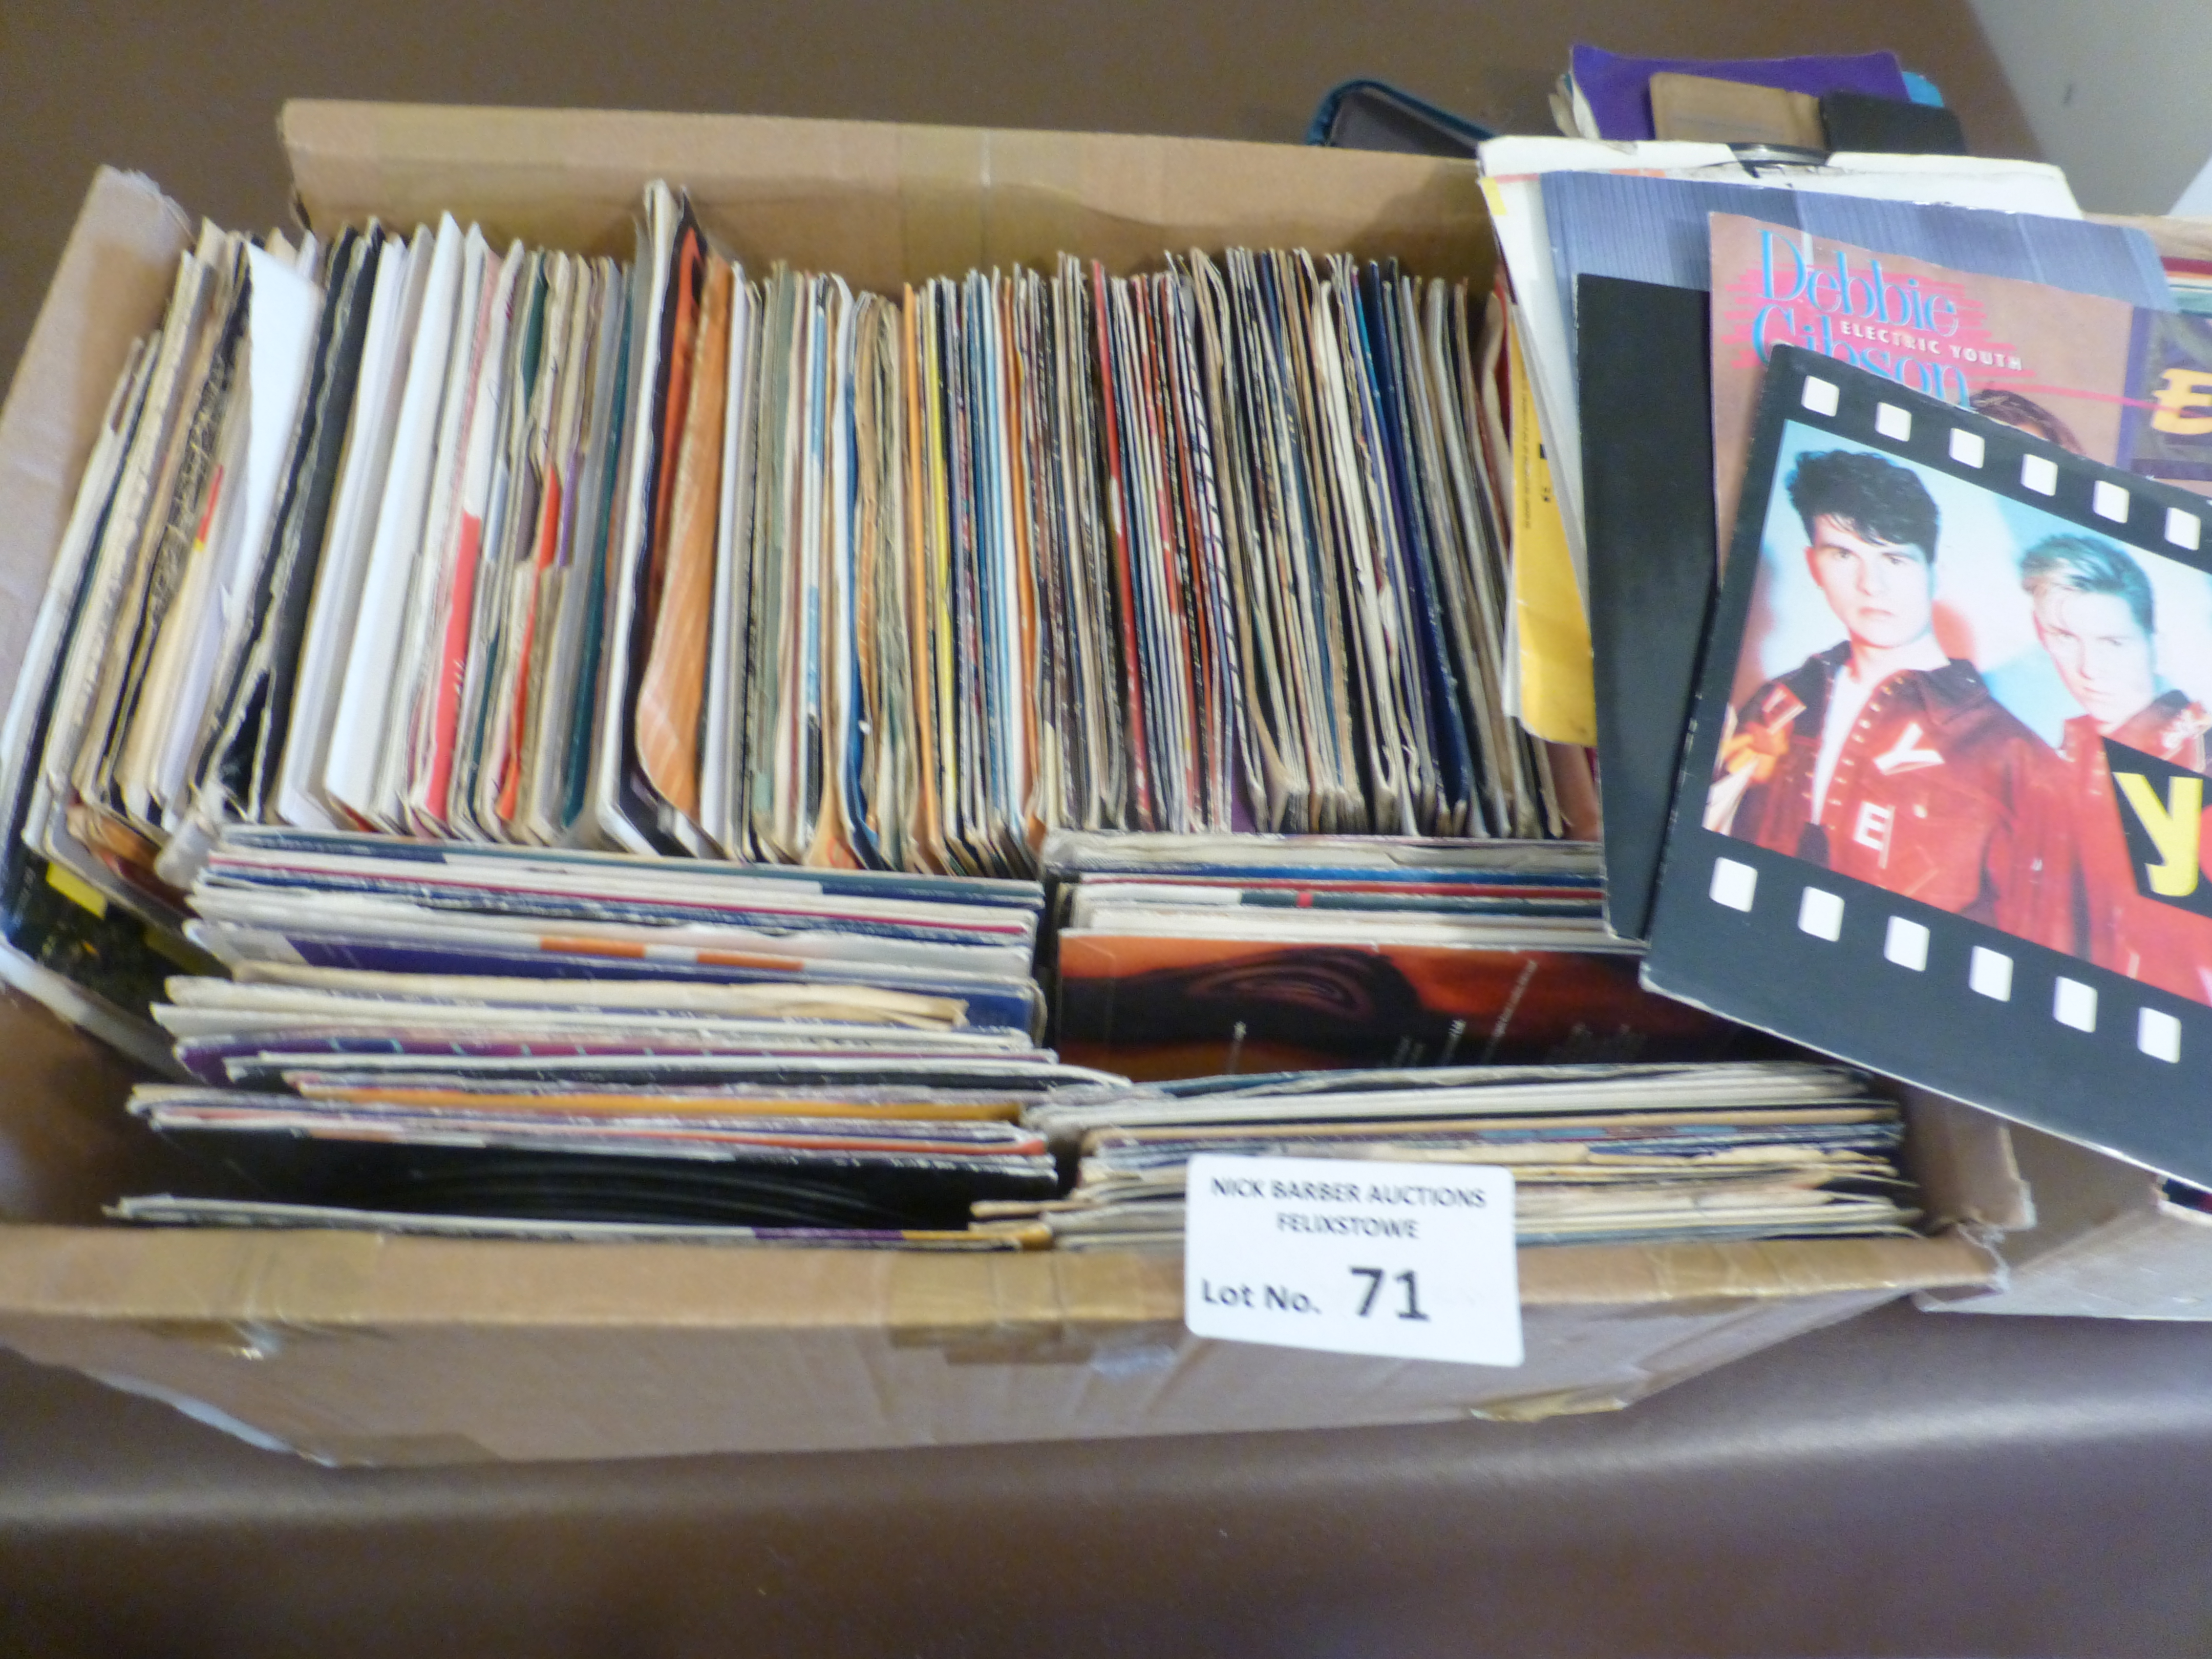 Records : Box of 200+ 7" singles 1970s/80s disco/p